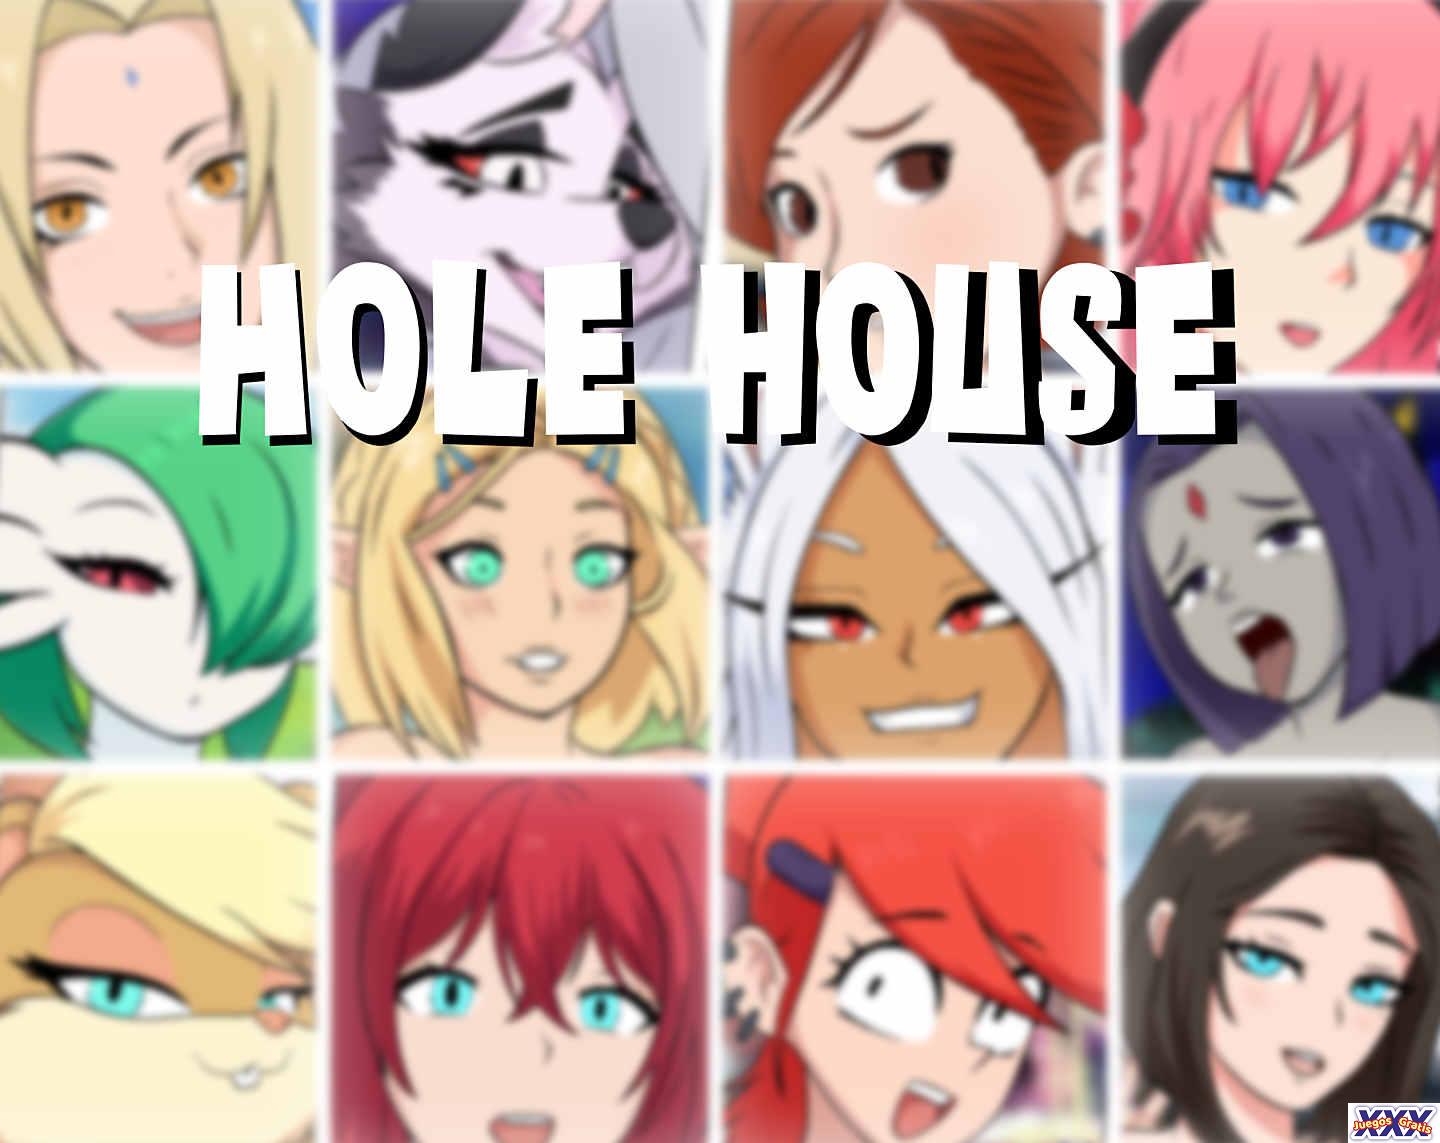 HOLE HOUSE [V0.1.63] [DOTART]